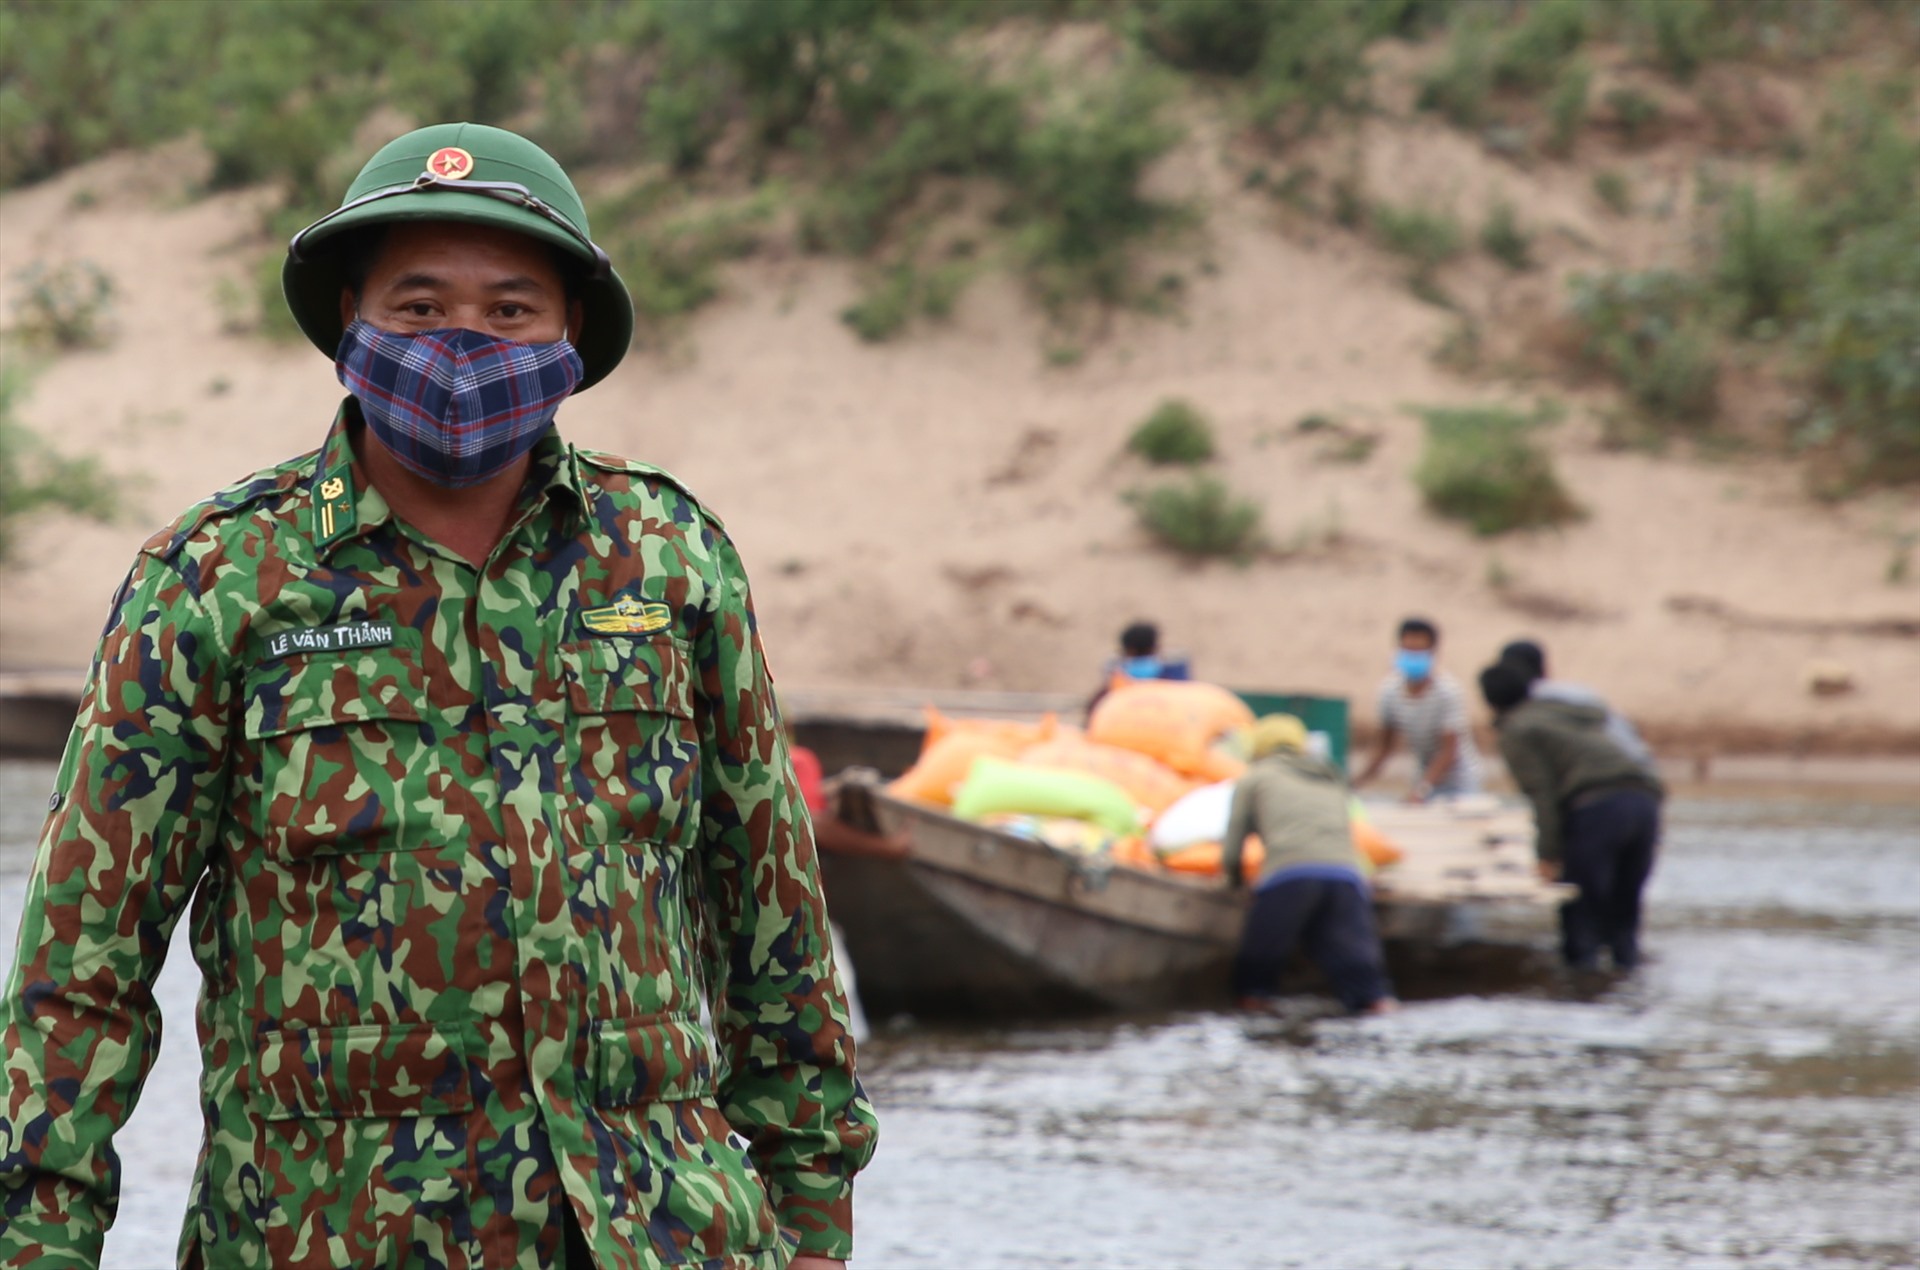 Thiếu tá Lê Văn Thảnh - phụ trách Trạm Cửa khẩu Thanh - Đồn Biên phòng Thanh hỗ trợ đẩy thuyền chở hàng sang giữa dòng sông thì quay trở lại.